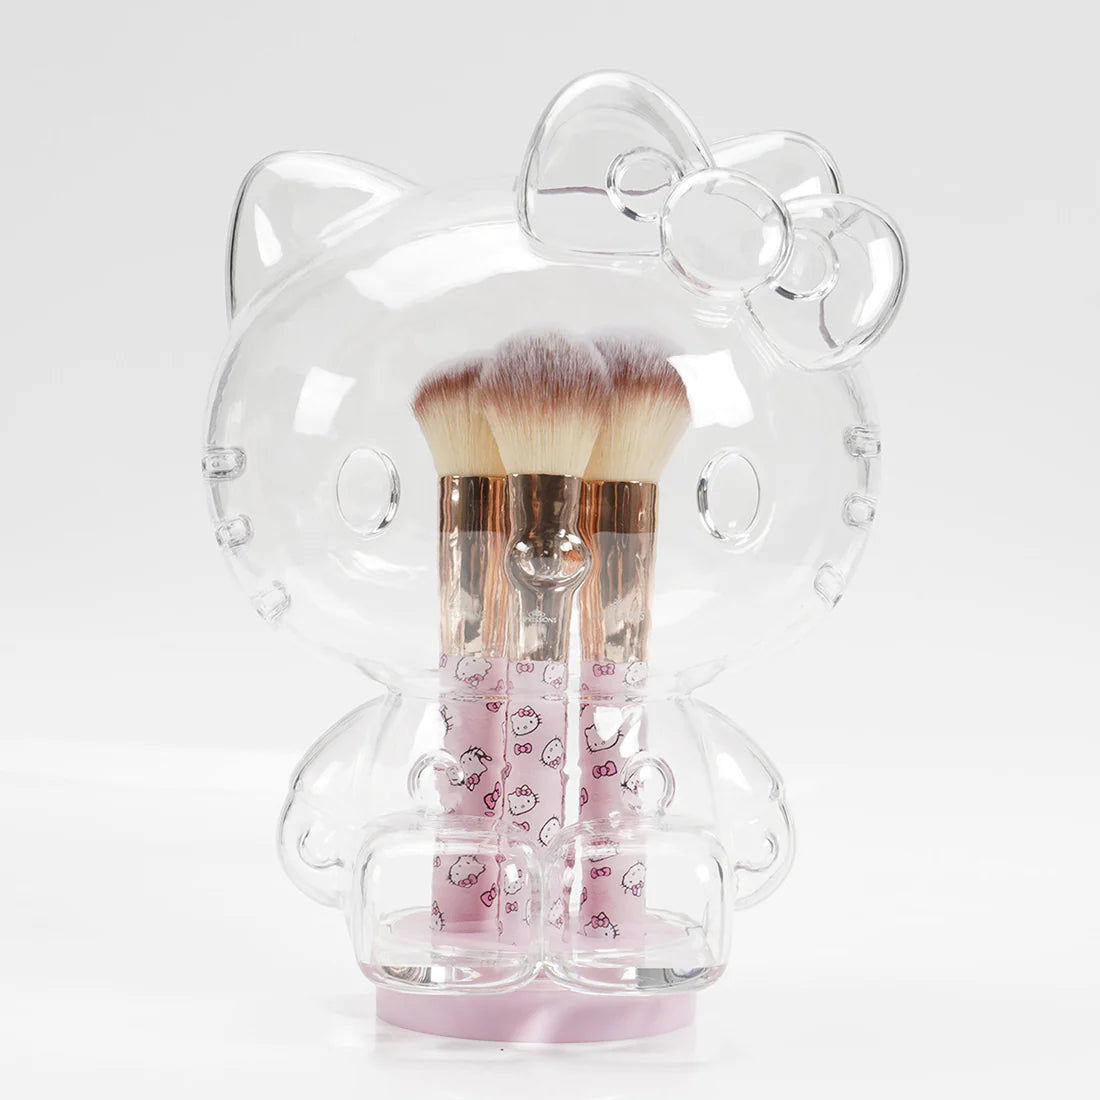 Impressions Vanity - Hello Kitty 6pc Brush Gift Set Pink